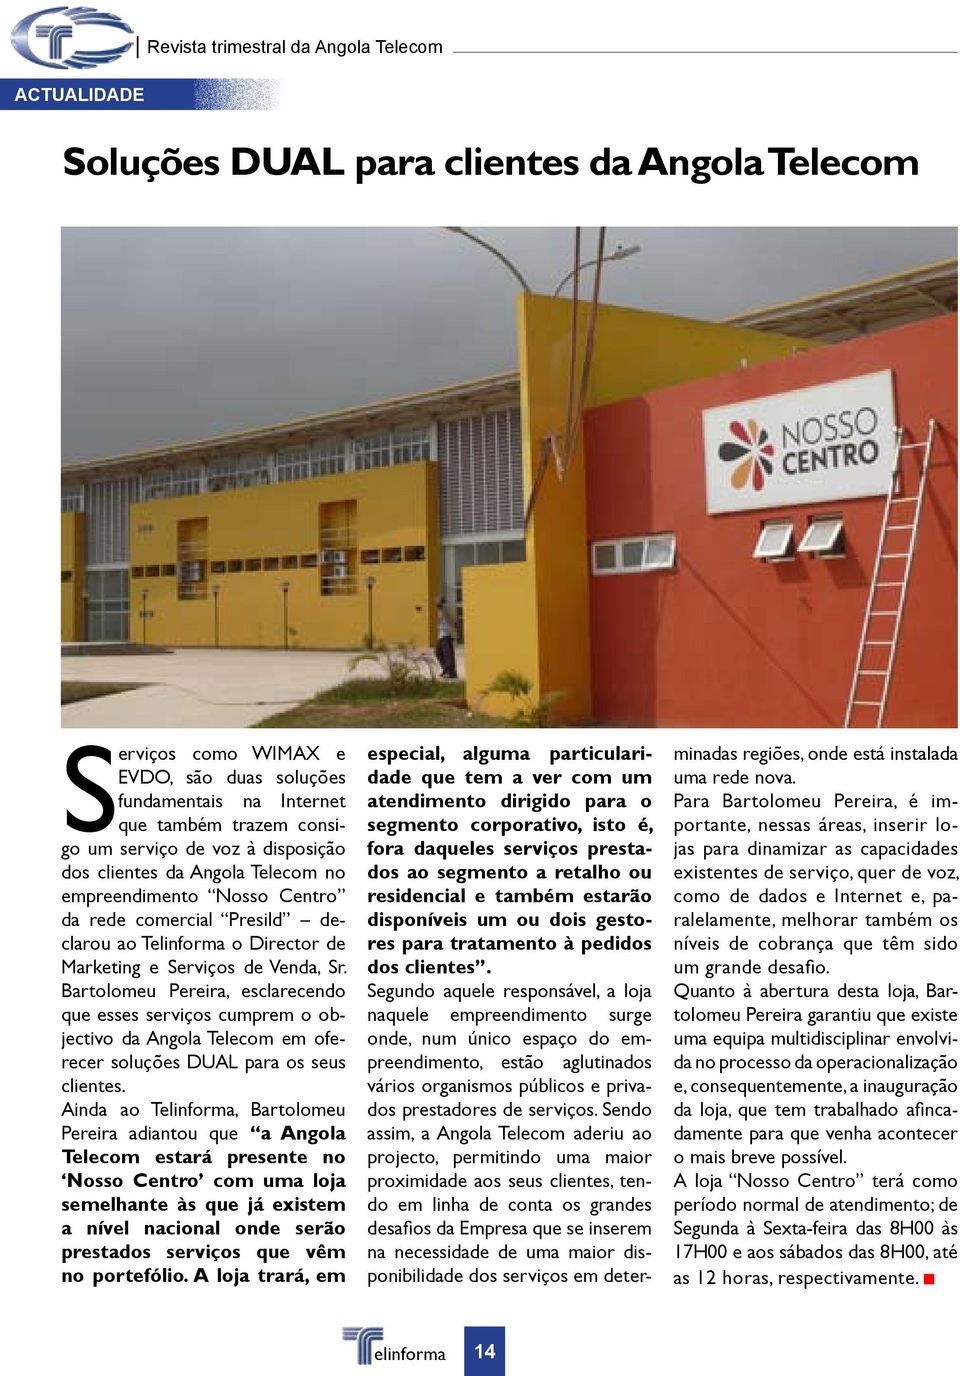 Bartolomeu Pereira, esclarecendo que esses serviços cumprem o objectivo da Angola Telecom em oferecer soluções DUAL para os seus clientes.